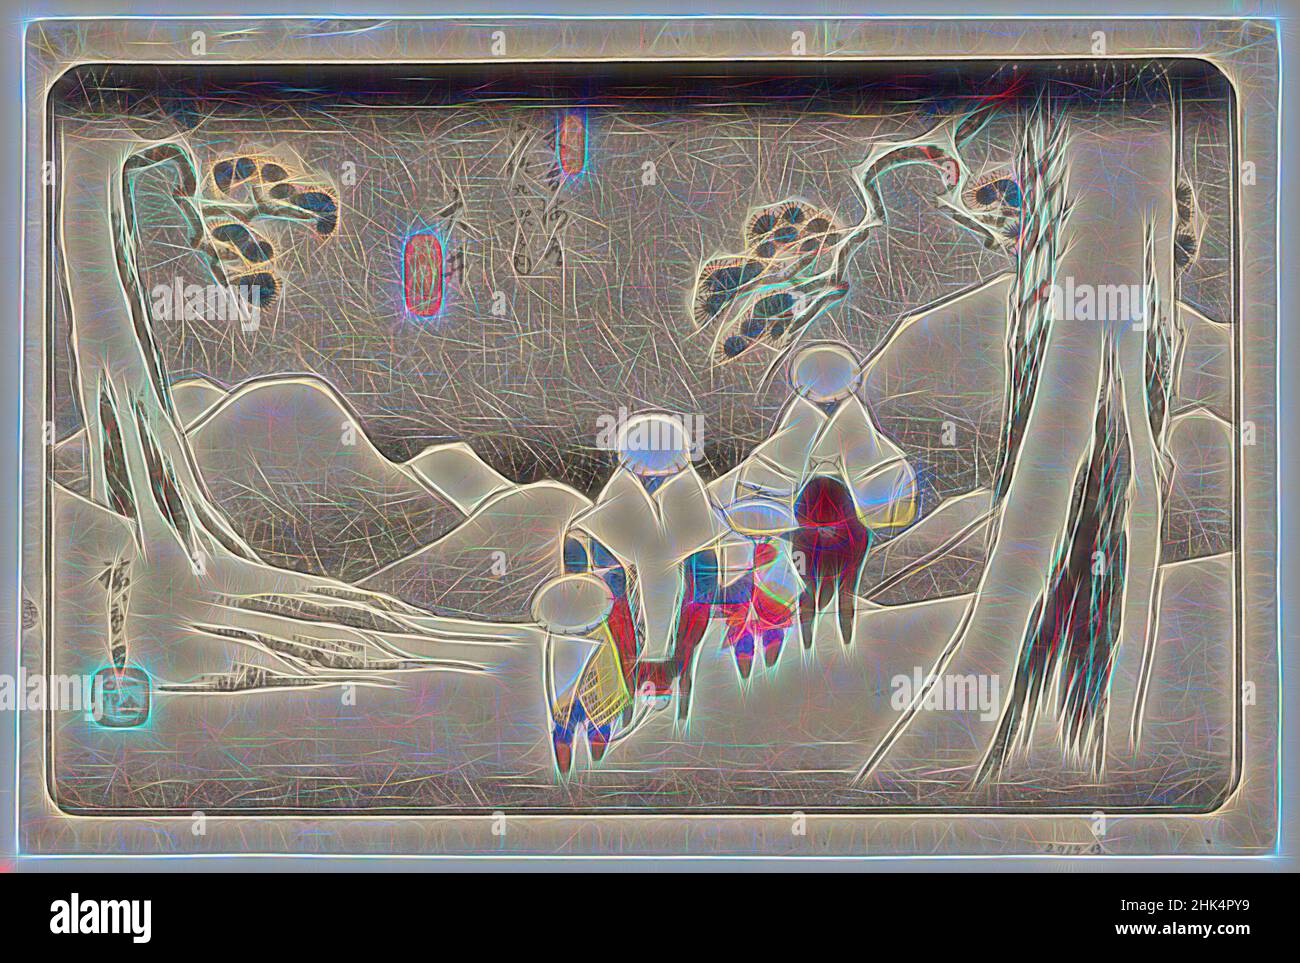 Inspiriert von Oi, von neunundsechzig Stationen auf dem Kisokaido Highway, Kisokaido rokujukyu tsugi no uchi, Utagawa Hiroshige, Ando, Japanisch, 1797-1858, Farbholzschnitt auf Papier, Japan, ca. 1843, Edo-Periode, Blatt: 9 3/16 x 14 5/8 Zoll, 24,8 x 37,3 cm, Schnee, neu erfunden von Artotop. Klassische Kunst neu erfunden mit einem modernen Twist. Design von warmen fröhlichen Leuchten der Helligkeit und Lichtstrahl Strahlkraft. Fotografie inspiriert von Surrealismus und Futurismus, umarmt dynamische Energie der modernen Technologie, Bewegung, Geschwindigkeit und Kultur zu revolutionieren Stockfoto